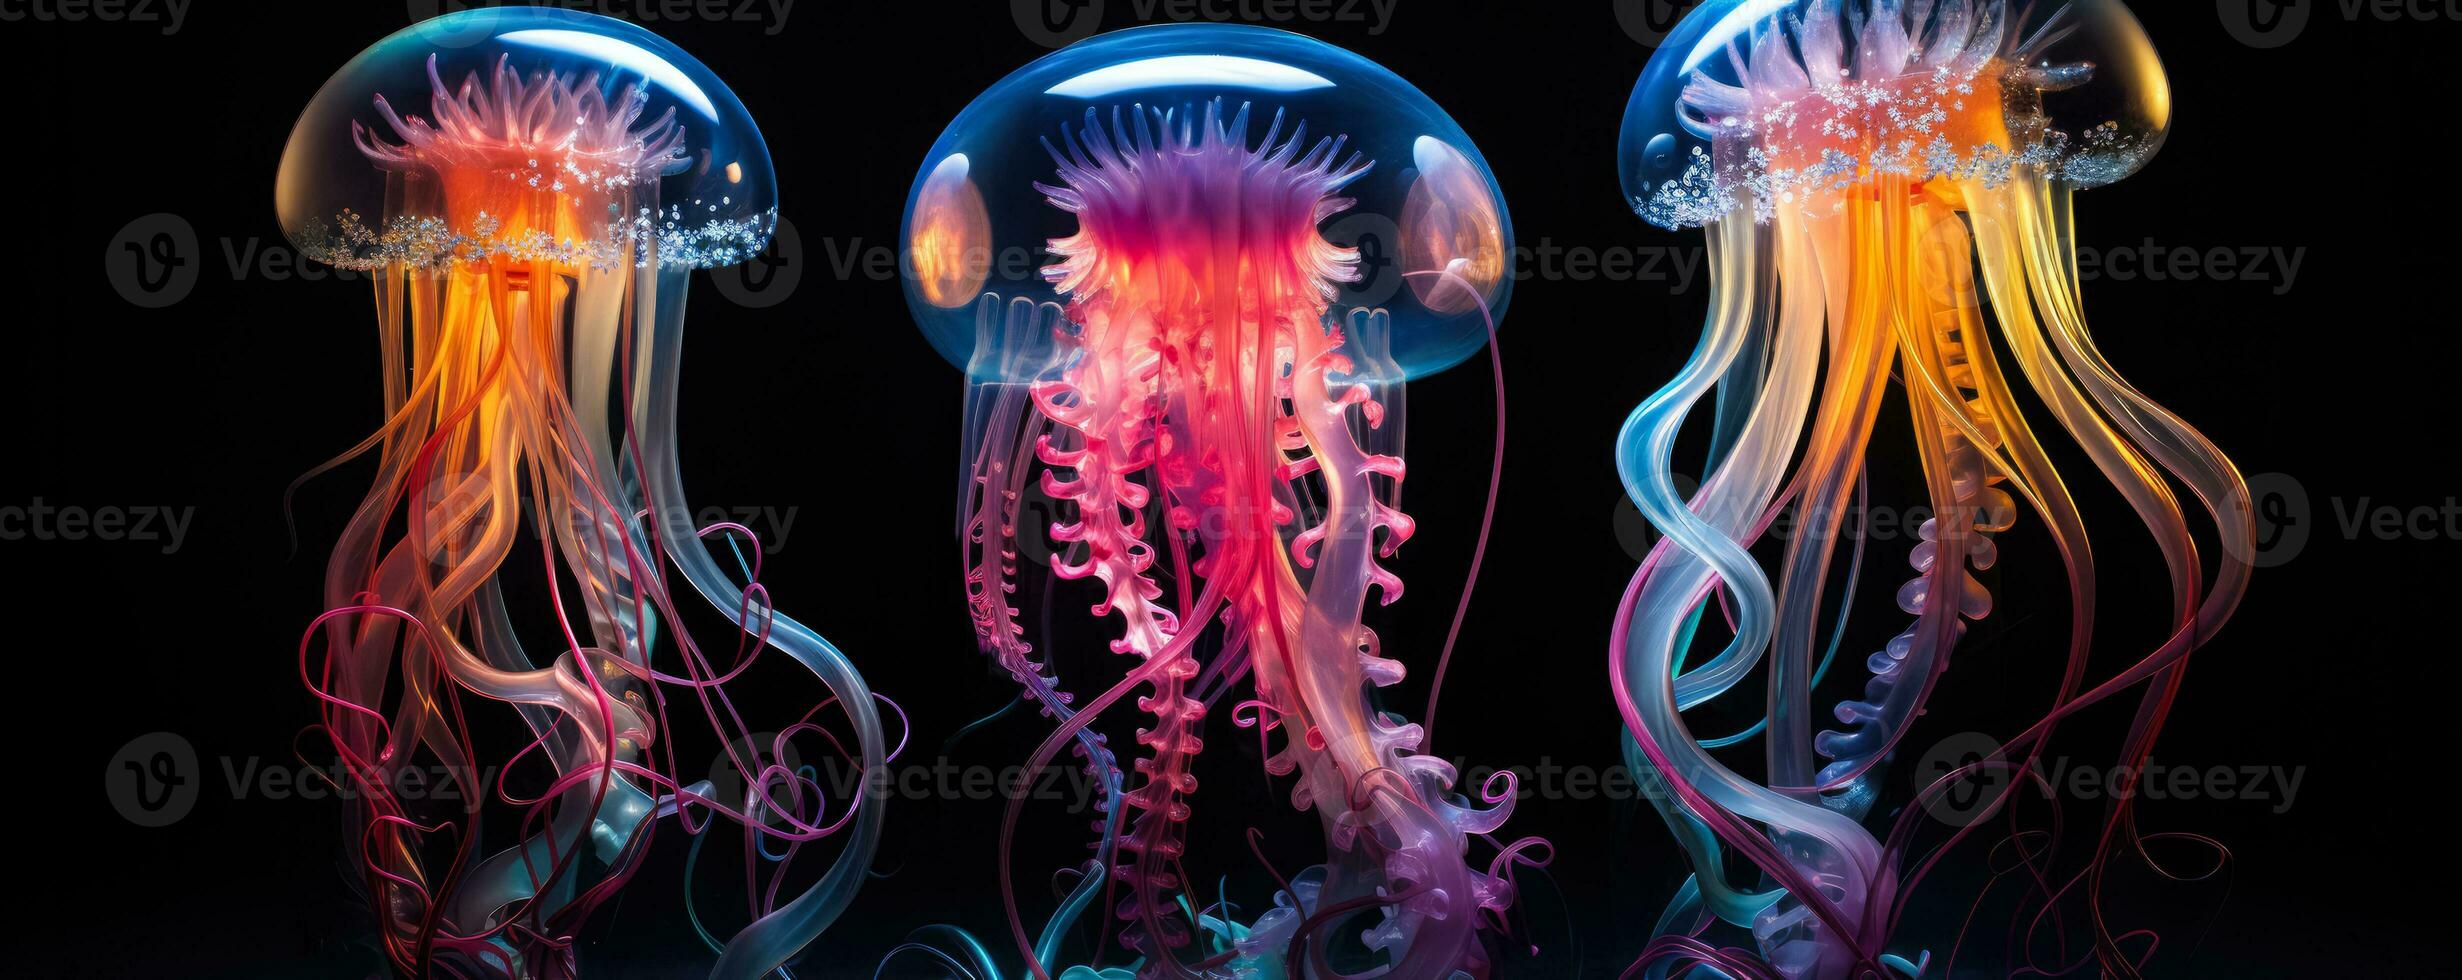 djup hav varelser belysande en mörk vatten- avgrund med vibrerande nyanser foto